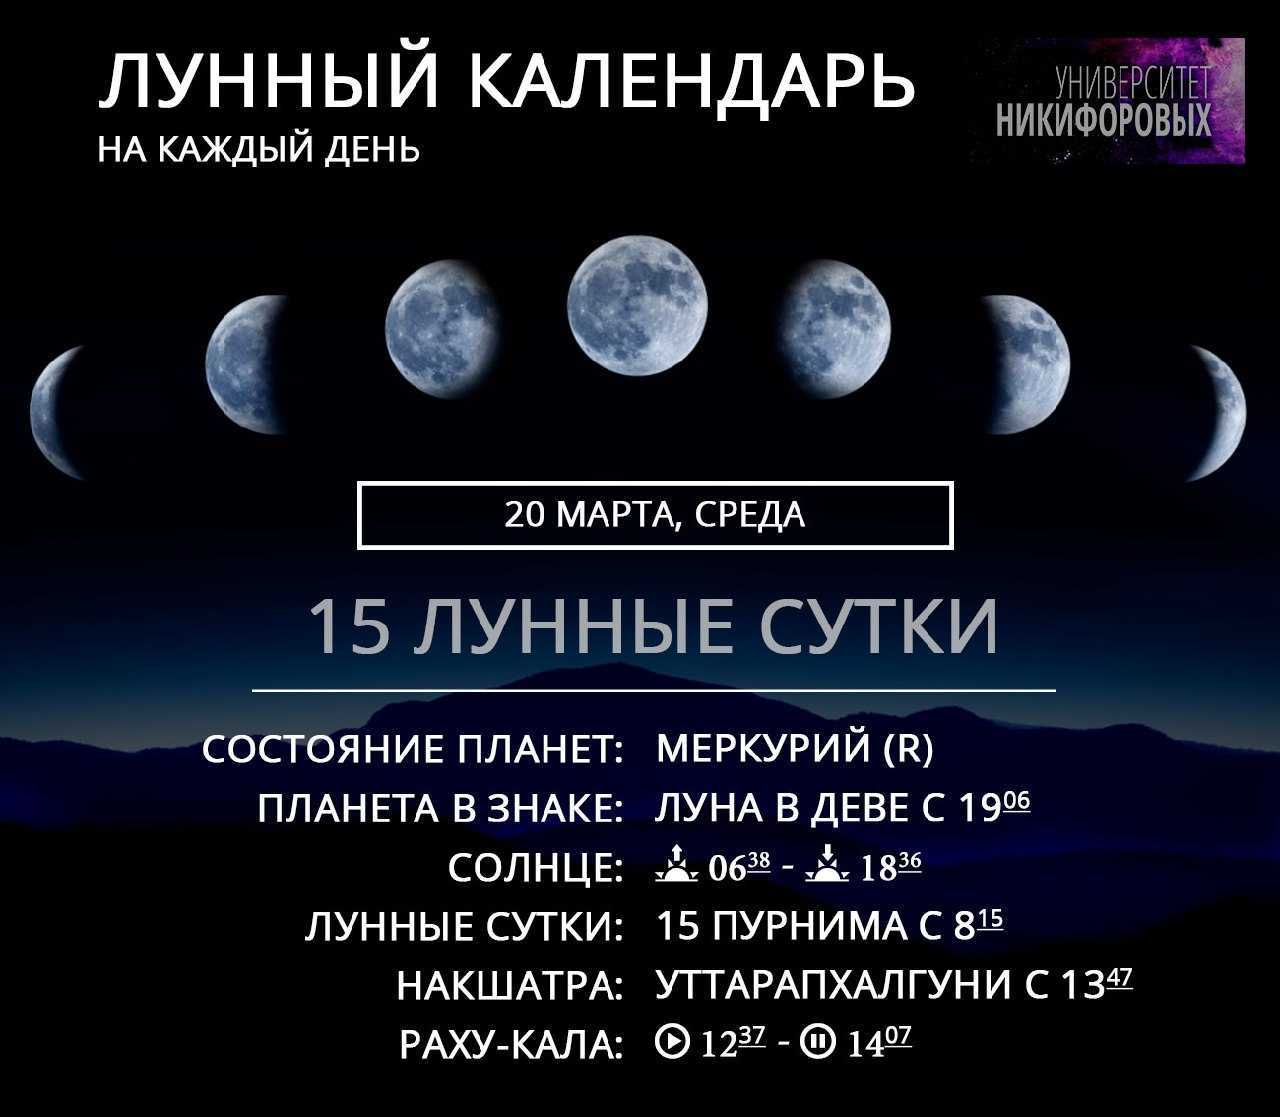 Лунный календарь на декабрь 2021 года: фазы, лунные дни, благоприятные дни